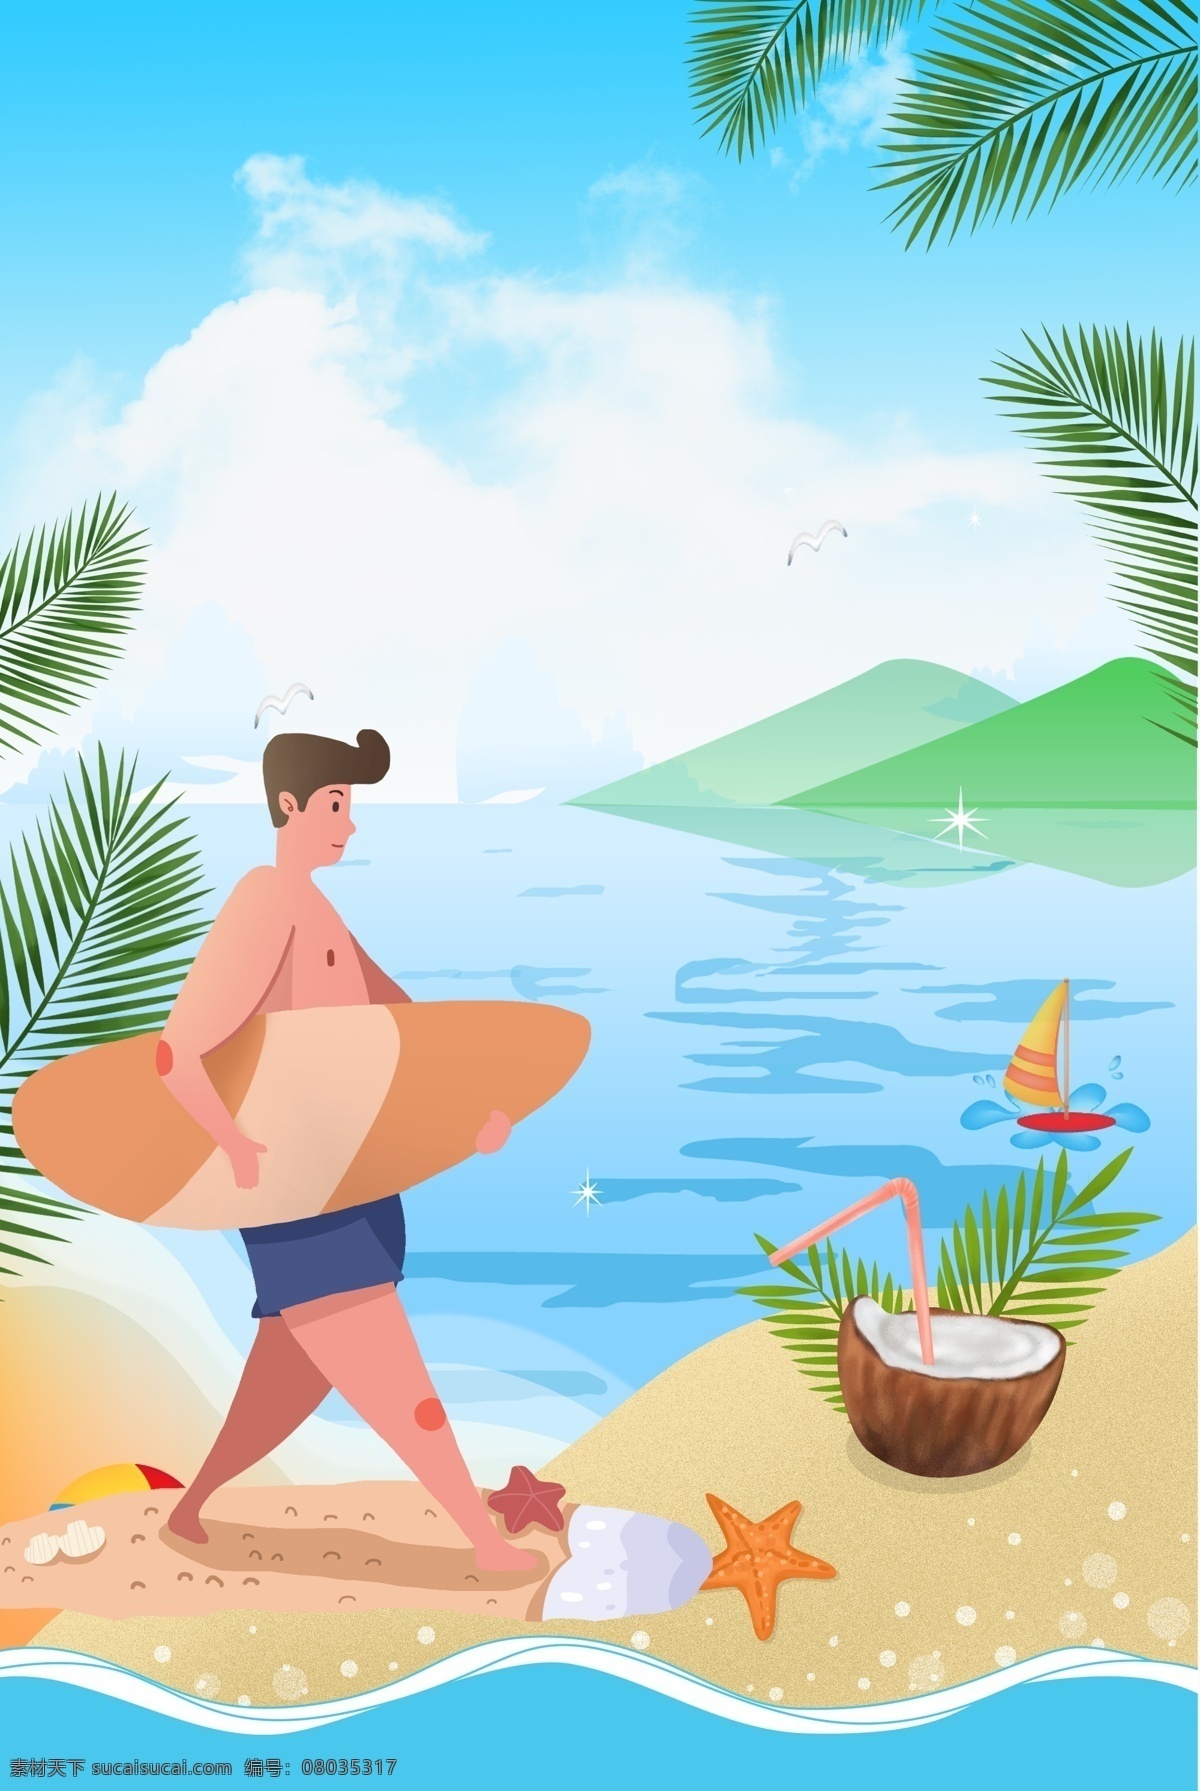 夏季 海上 运动 背景 划水 海上运动 凉爽的 椰子树 美丽的 假日 卡通 夏天 太阳 夏天海边 沙滩 度假